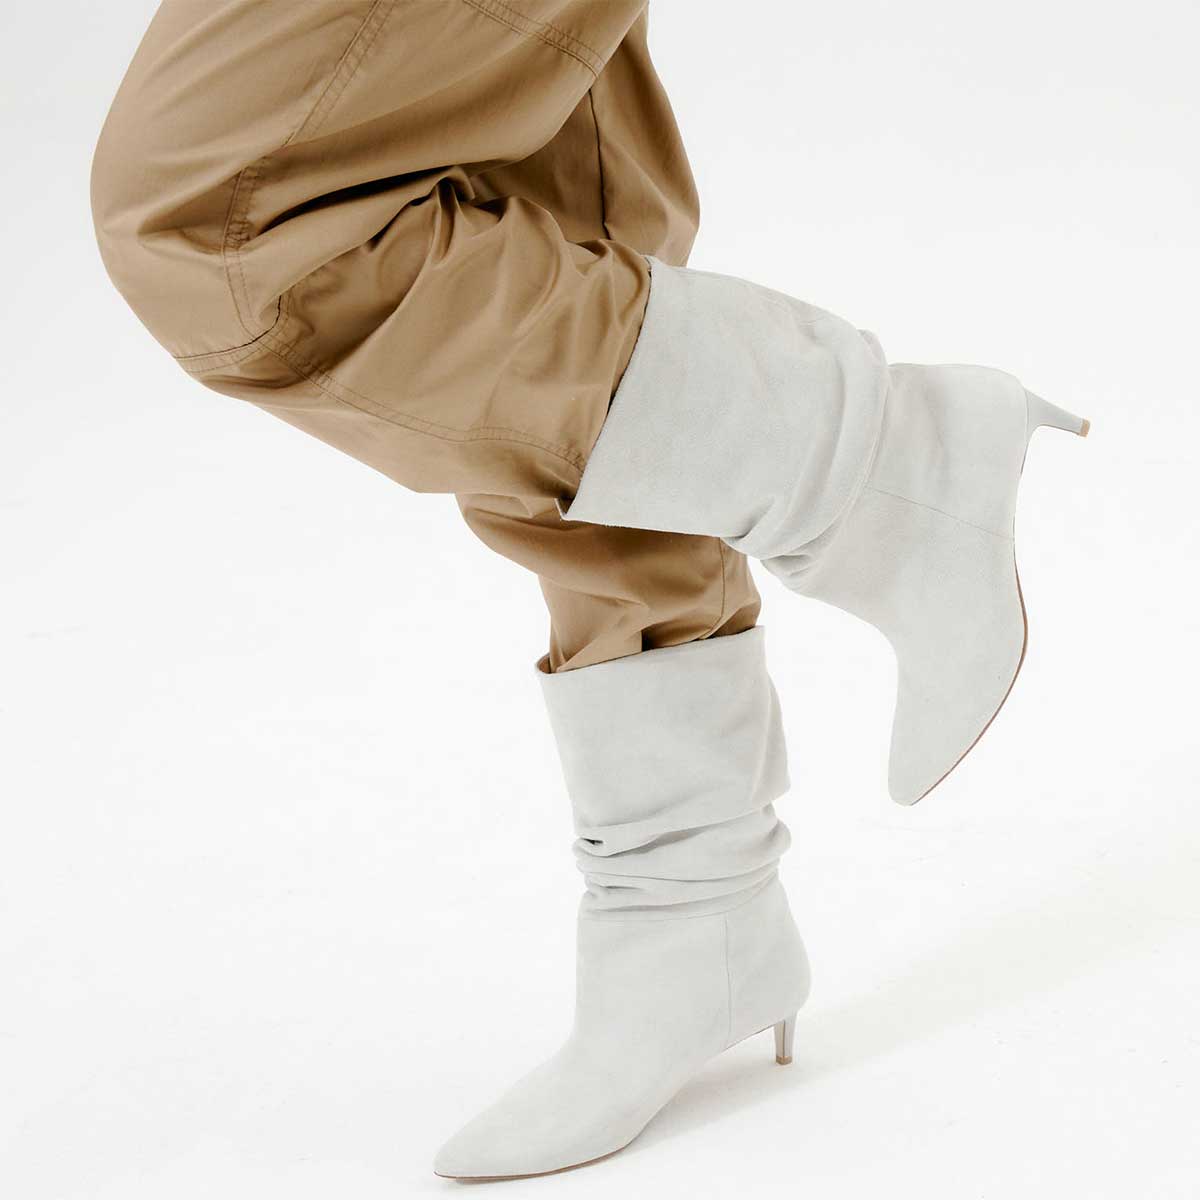 Occam Shirring Boots (오캄 셔링 부츠) Ivory